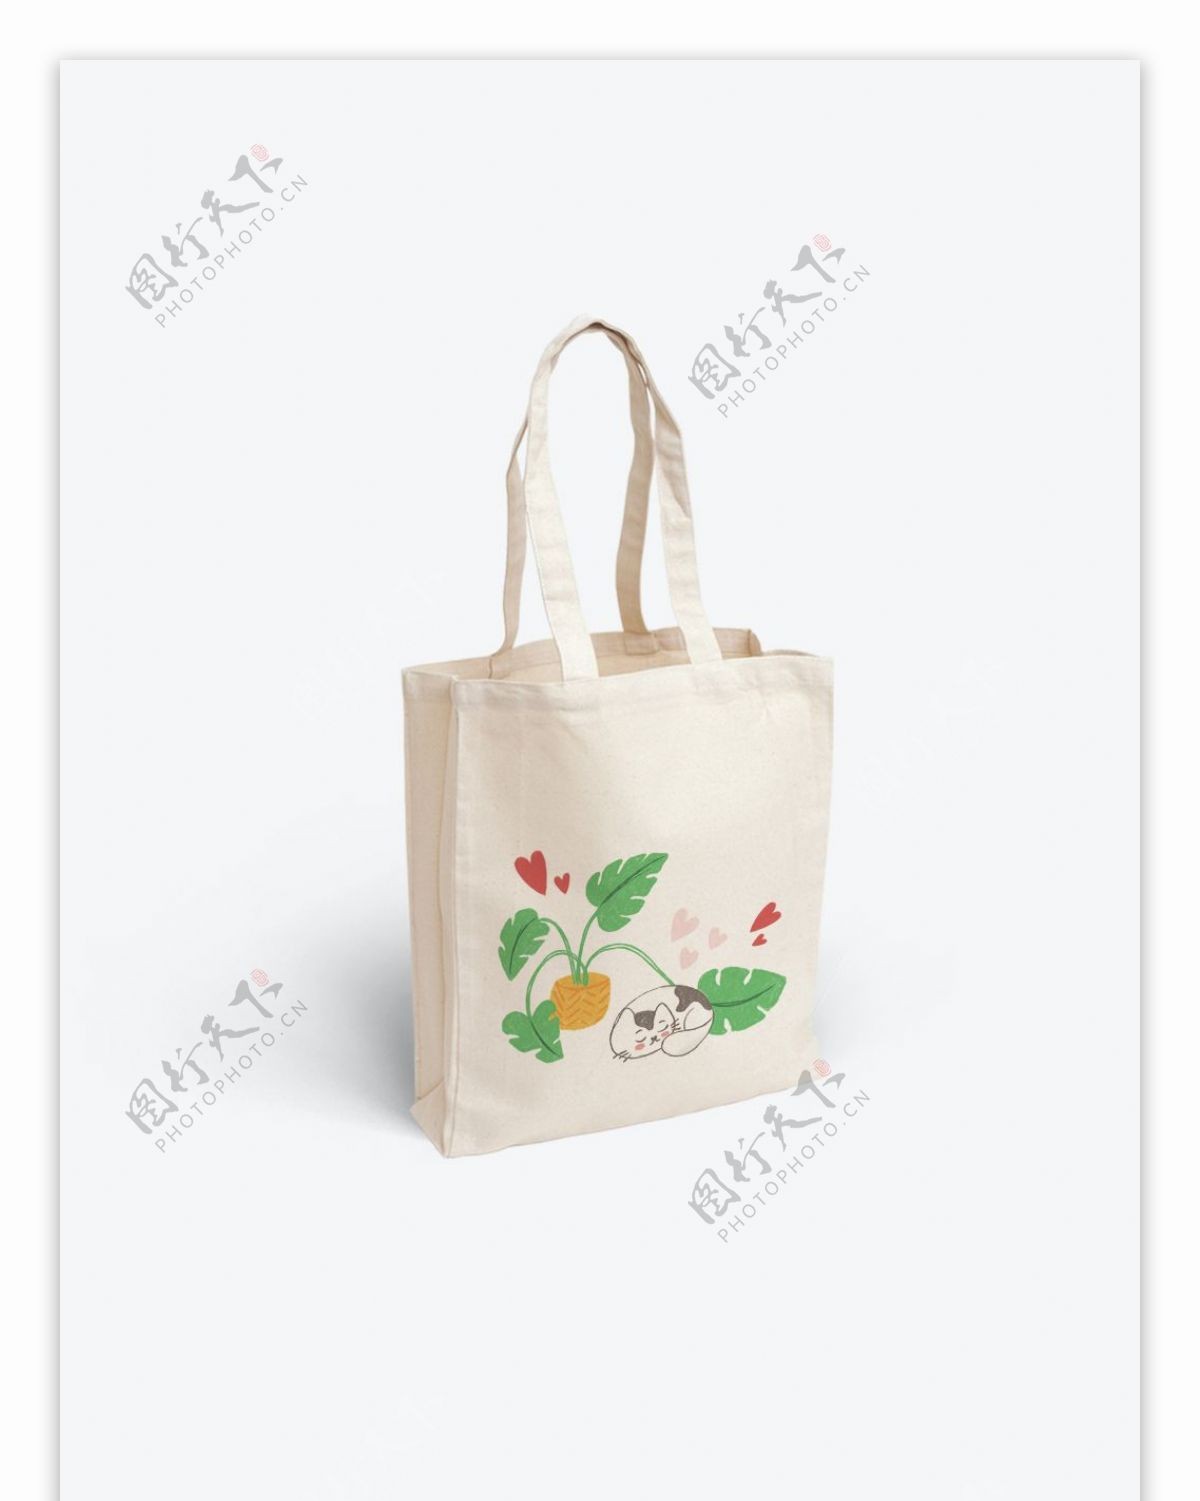 帆布袋包装设计绿植与萌猫系列简约小清新